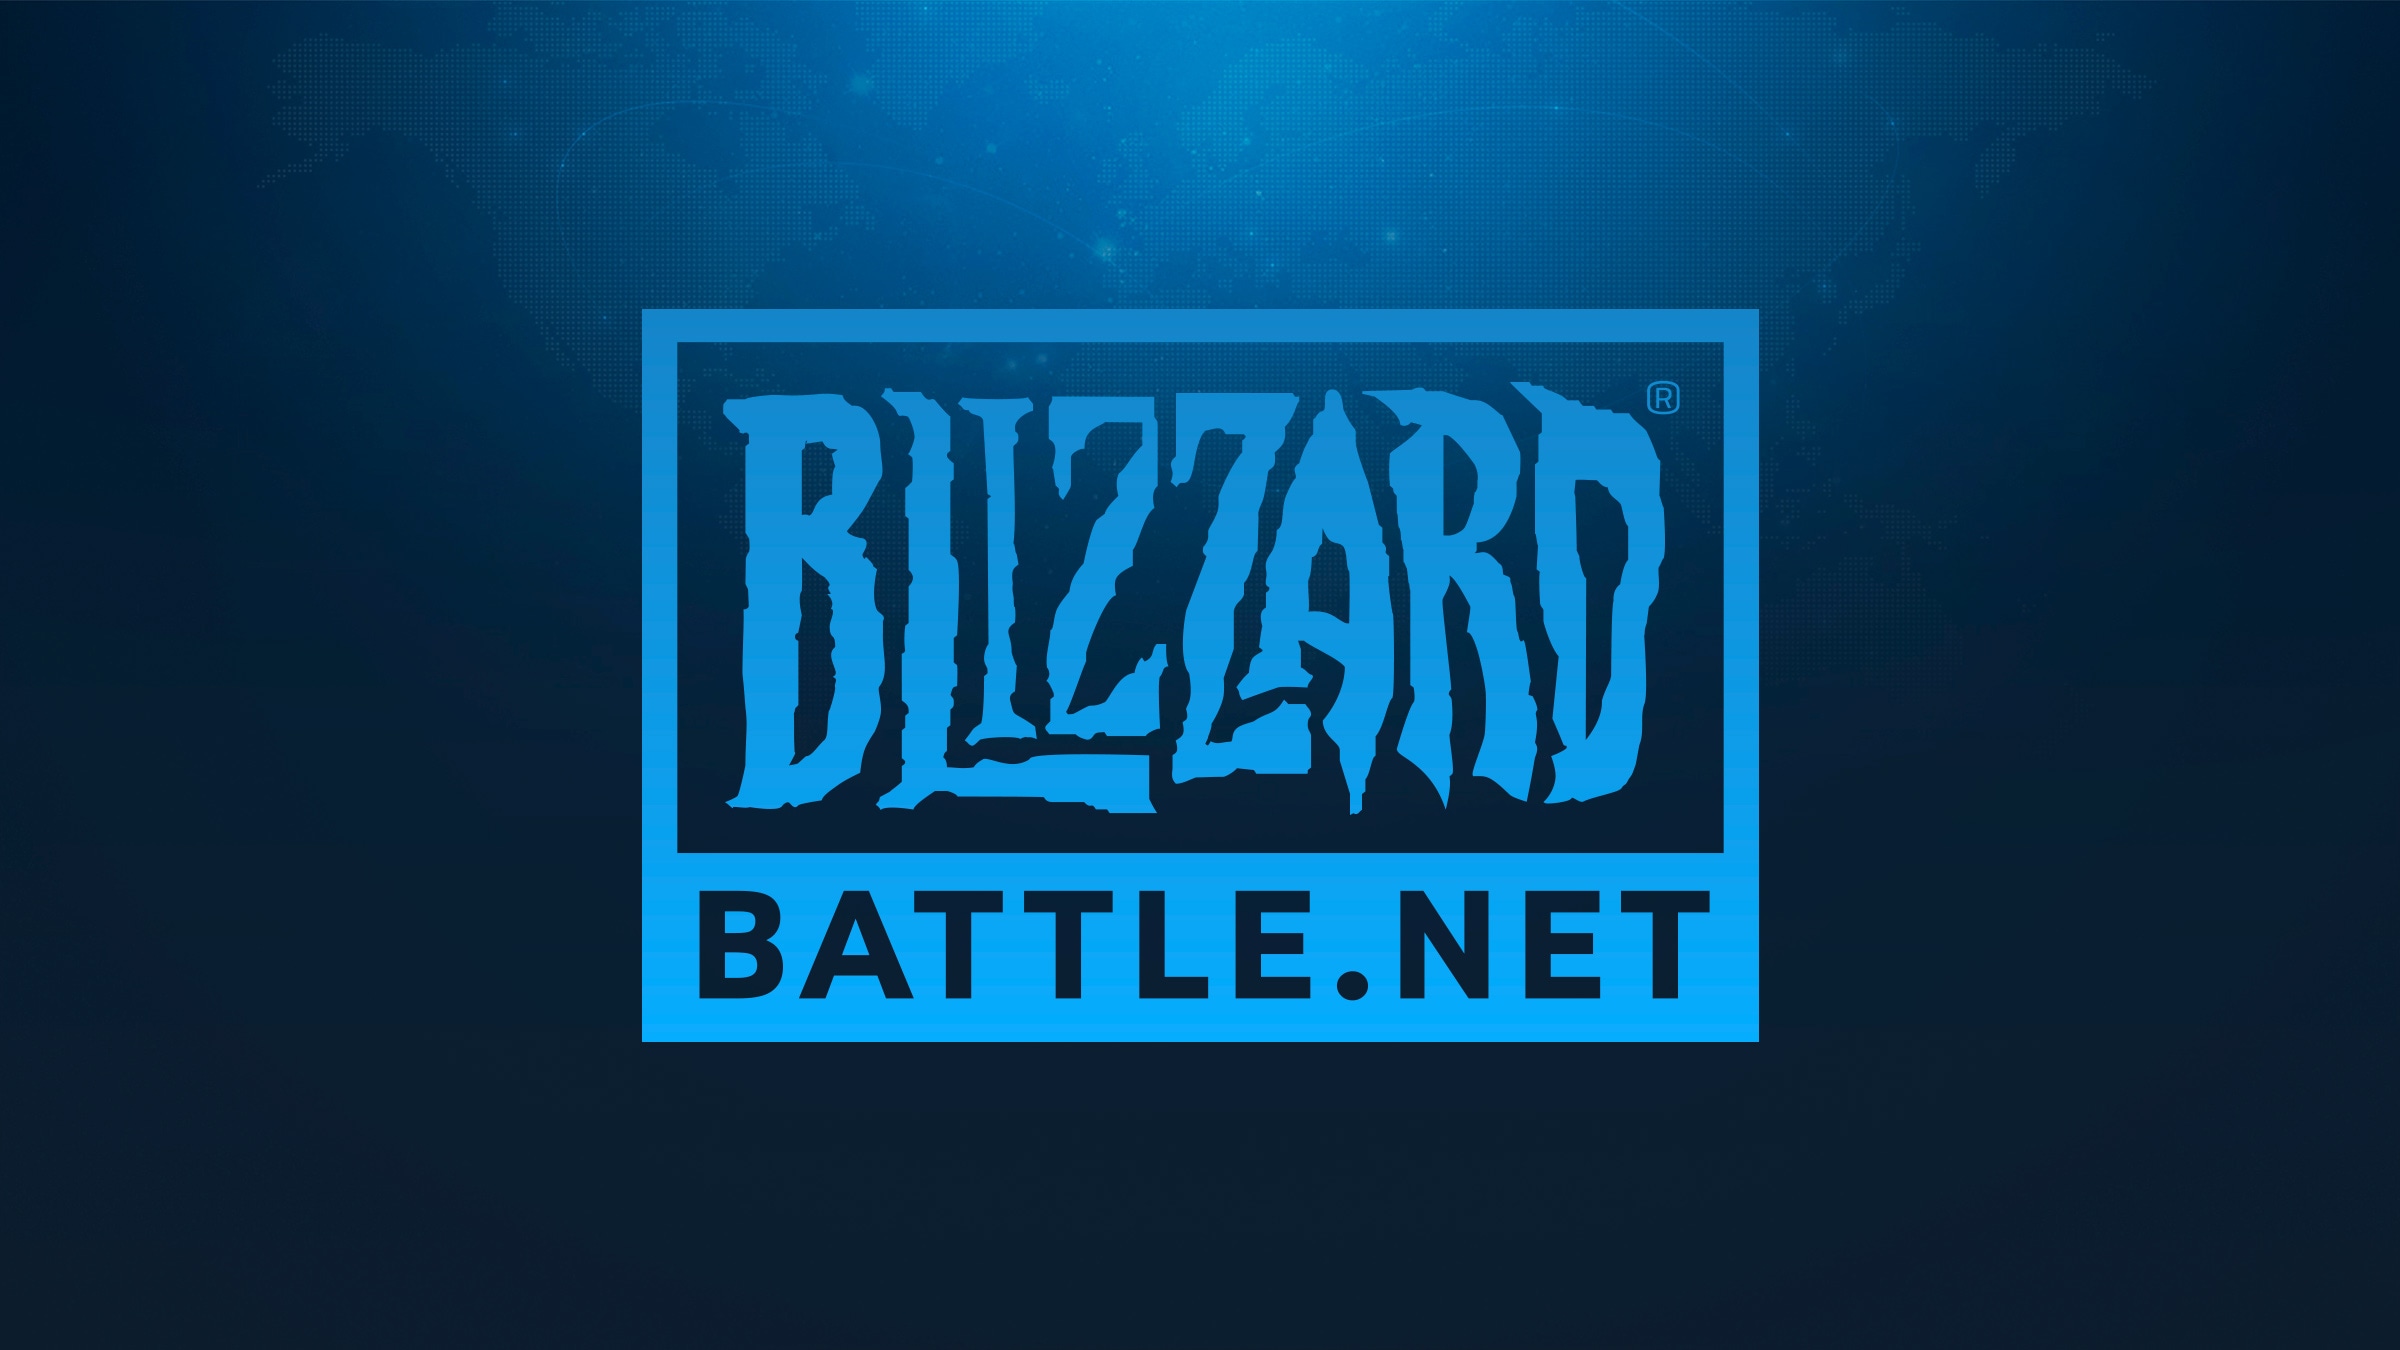 [お知らせ] Blizzardエンドユーザー使用許諾契約の改正に関するご案内